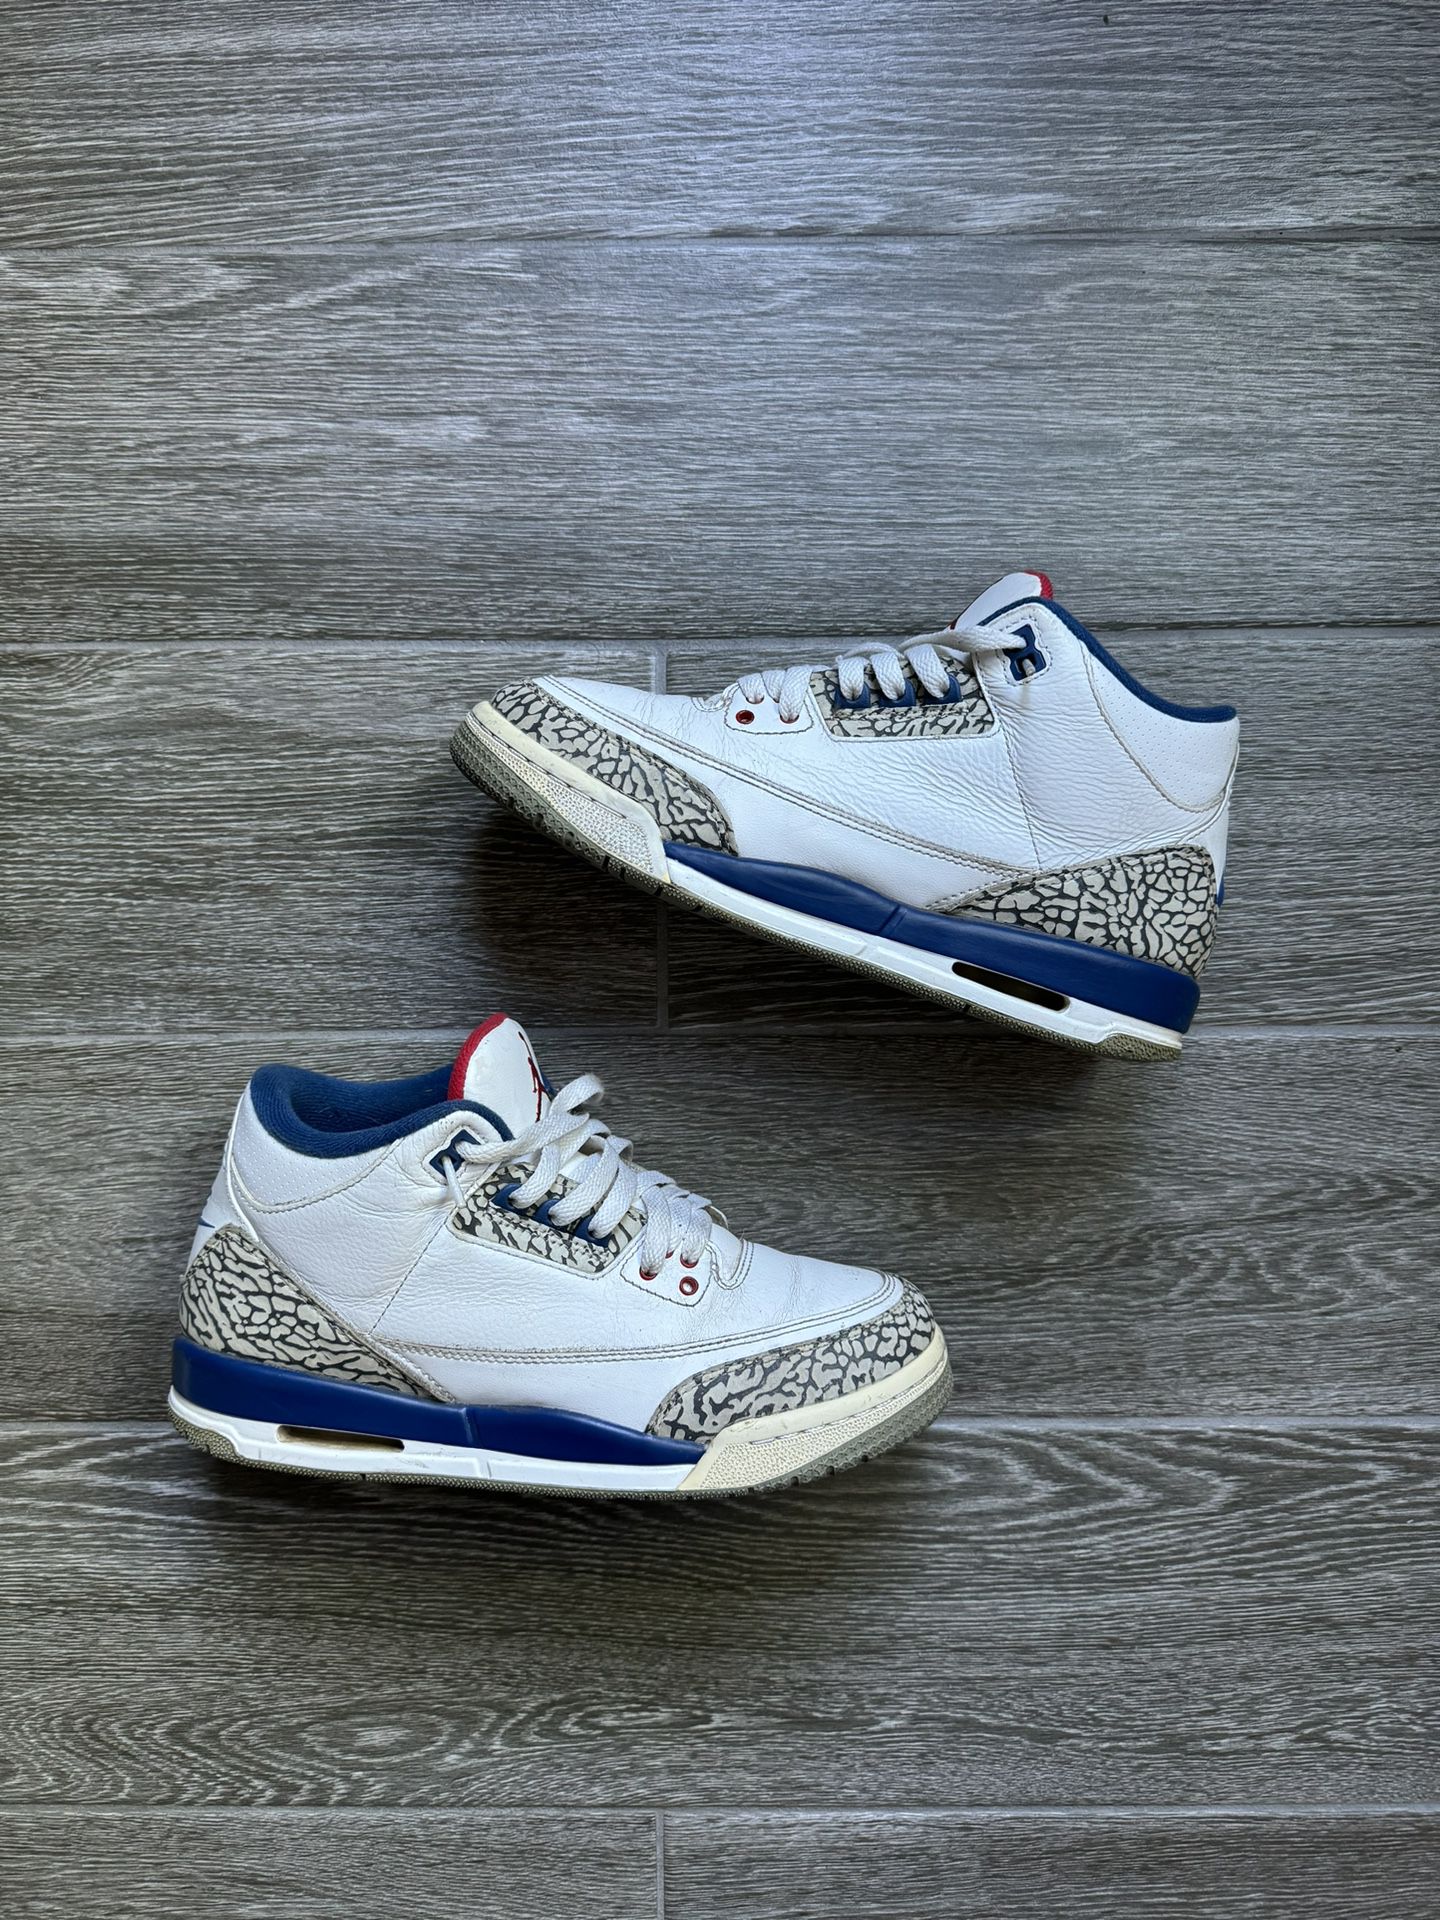 Jordan 3 true blue 2016 pair